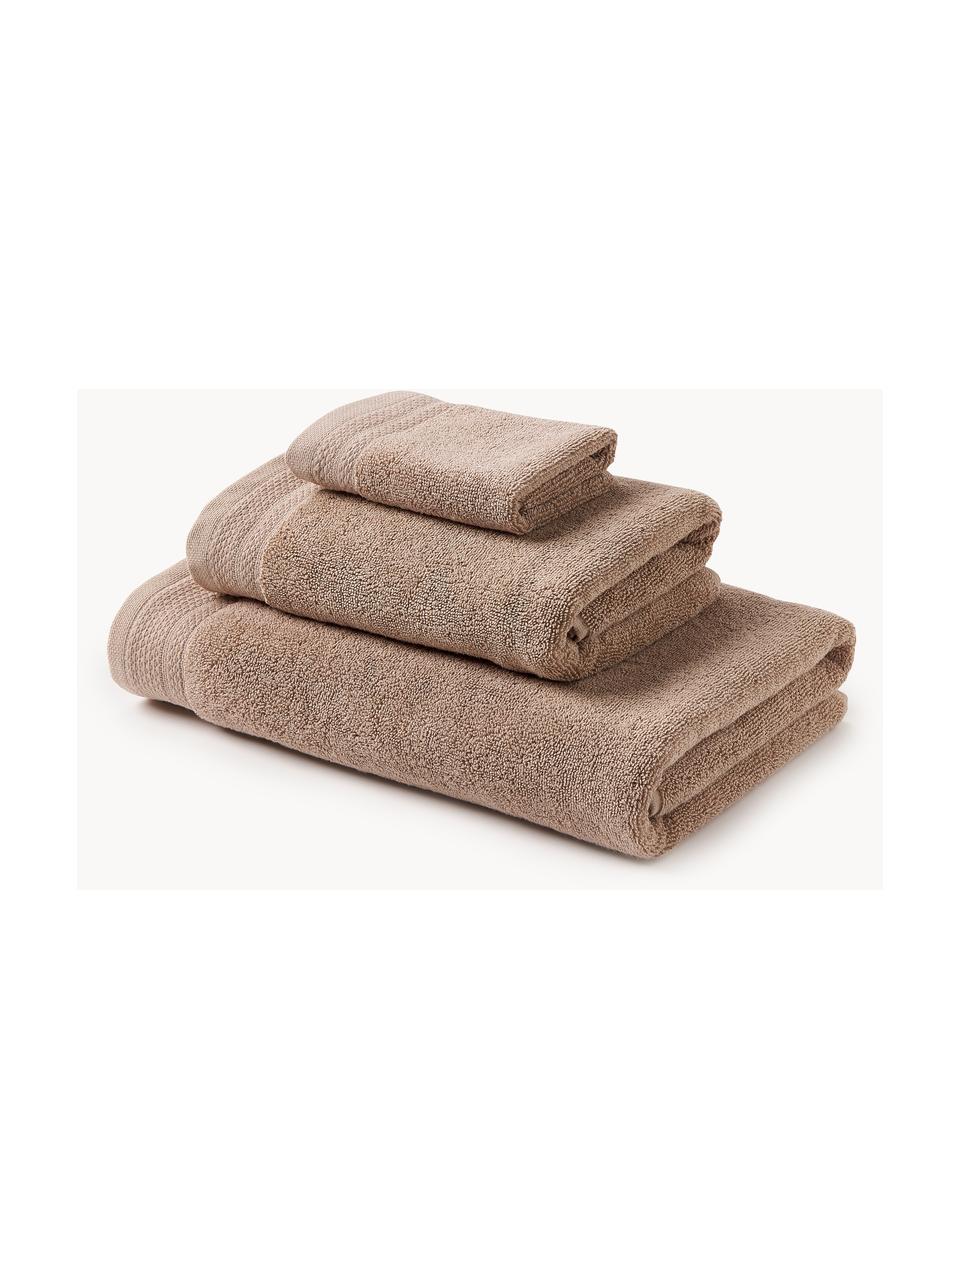 Set 3 asciugamani in cotone organico Premium, 100% cotone organico certificato GOTS (da GCL International, GCL-300517).
Qualità pesante, 600 g/m², Beige, Set in varie misure